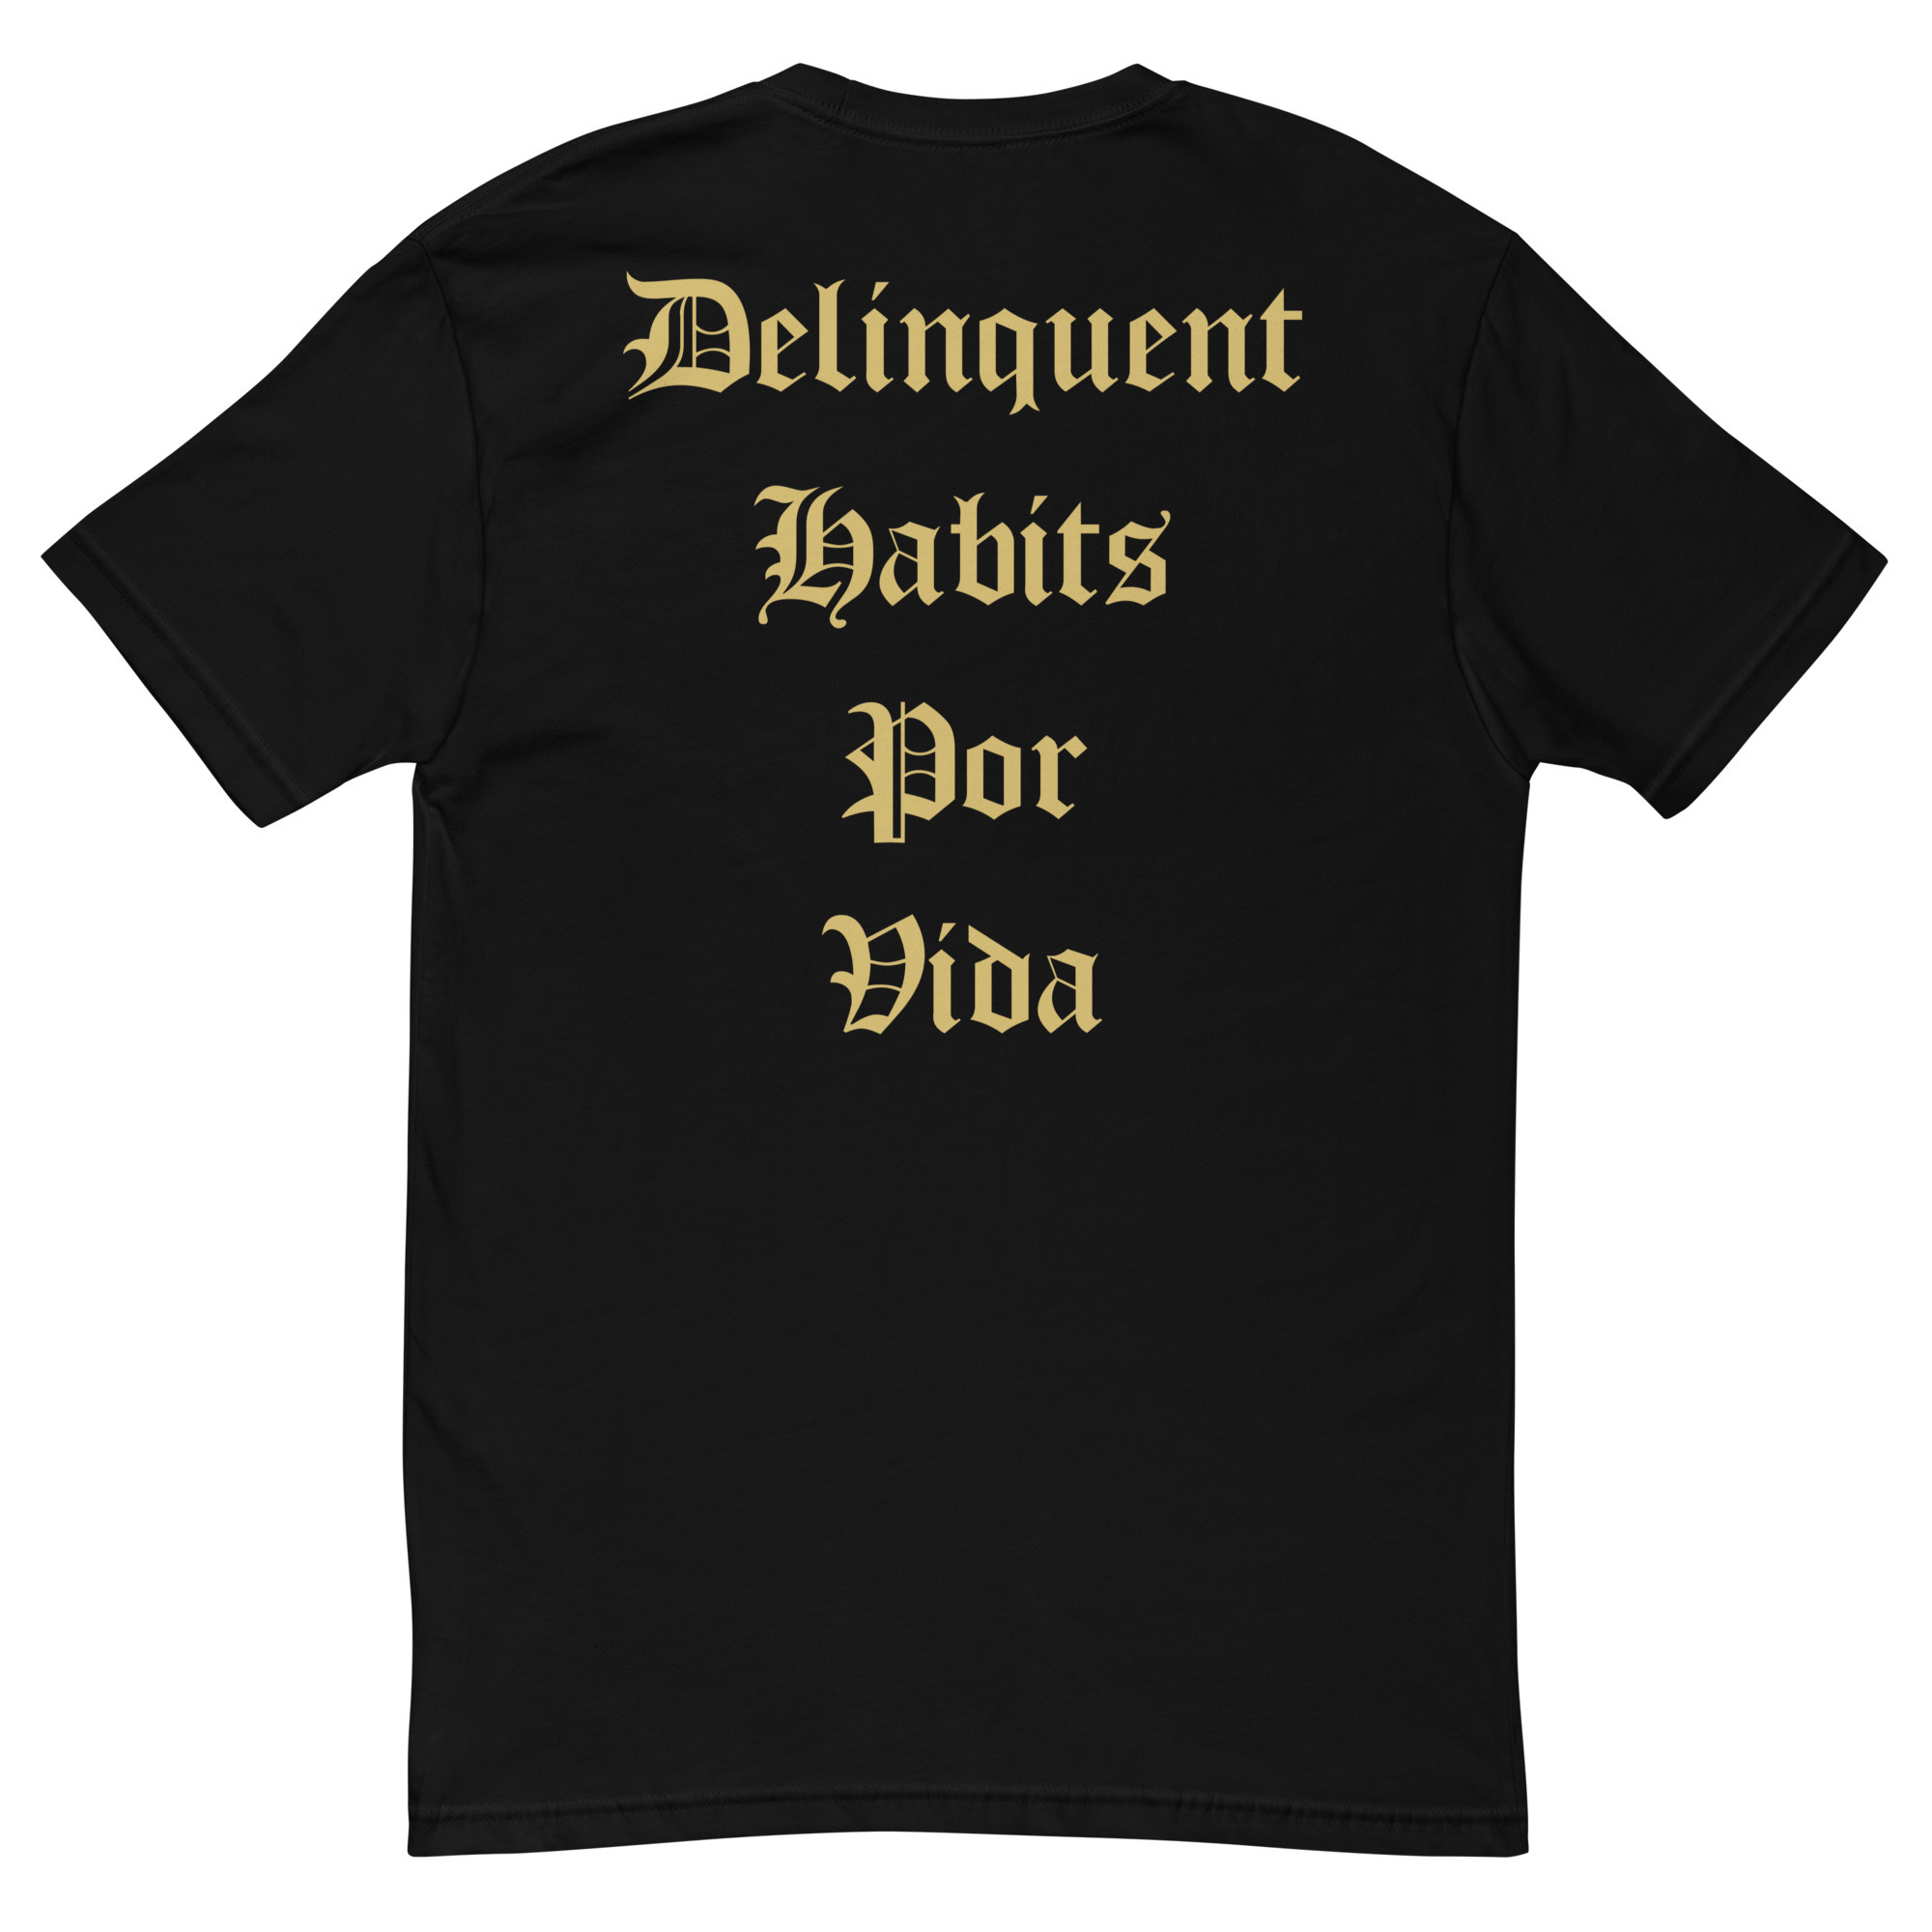 Mexico - Delinquent Habits por Vida - Short Sleeve T-shirt